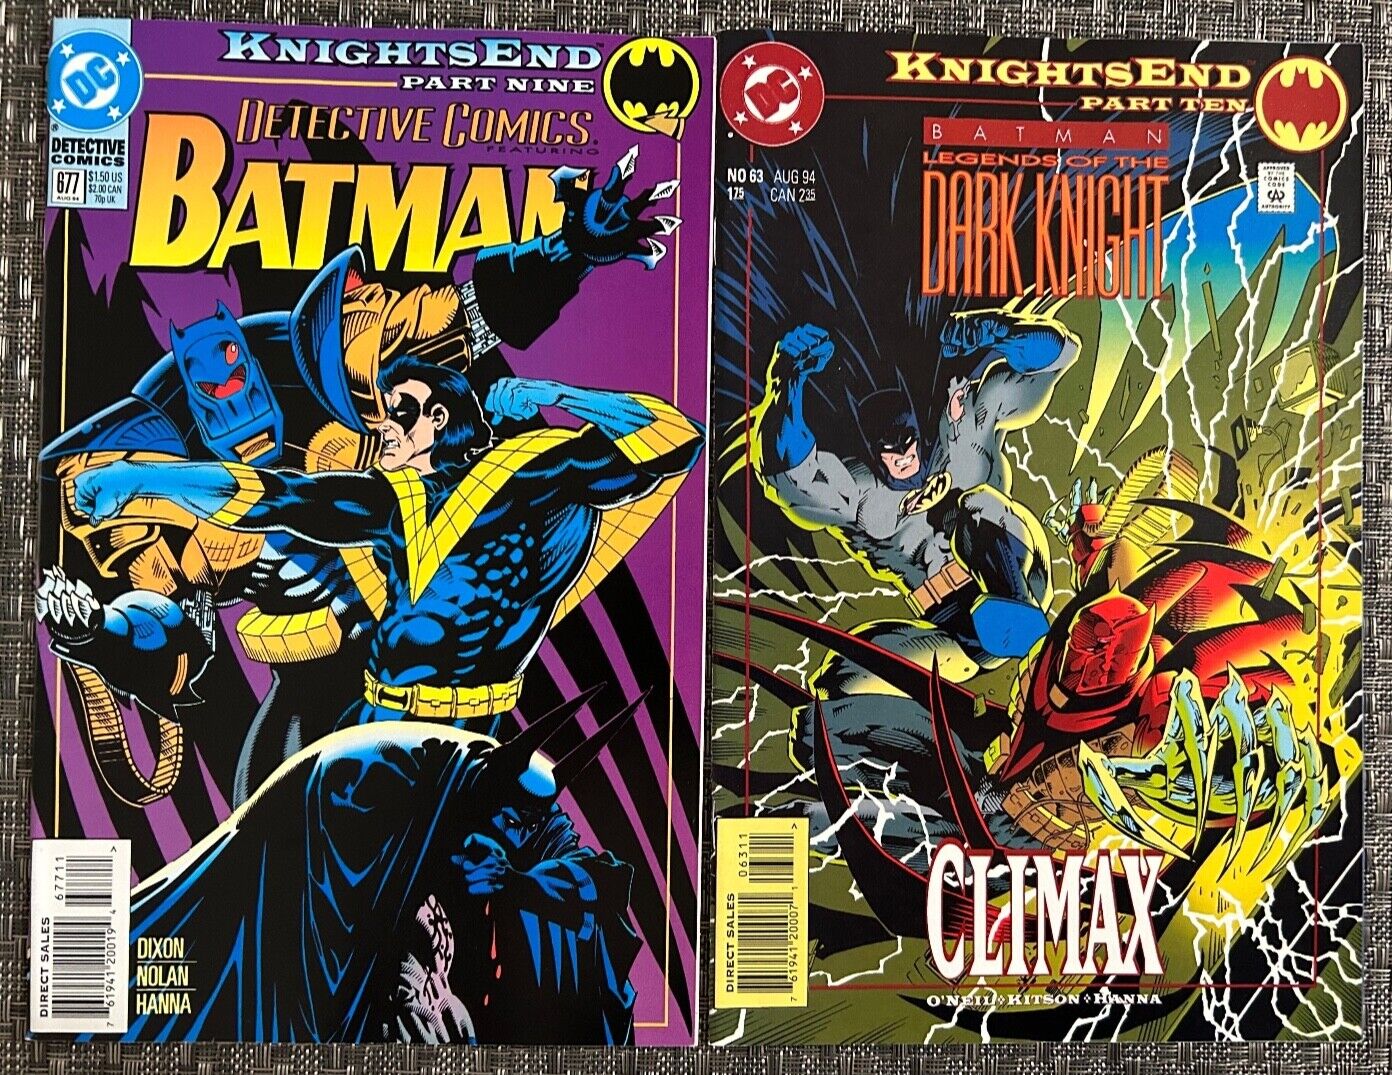 Batman Knights End Parts 9 & 10 DC Comics 1994 Detective #677 and Legends #63